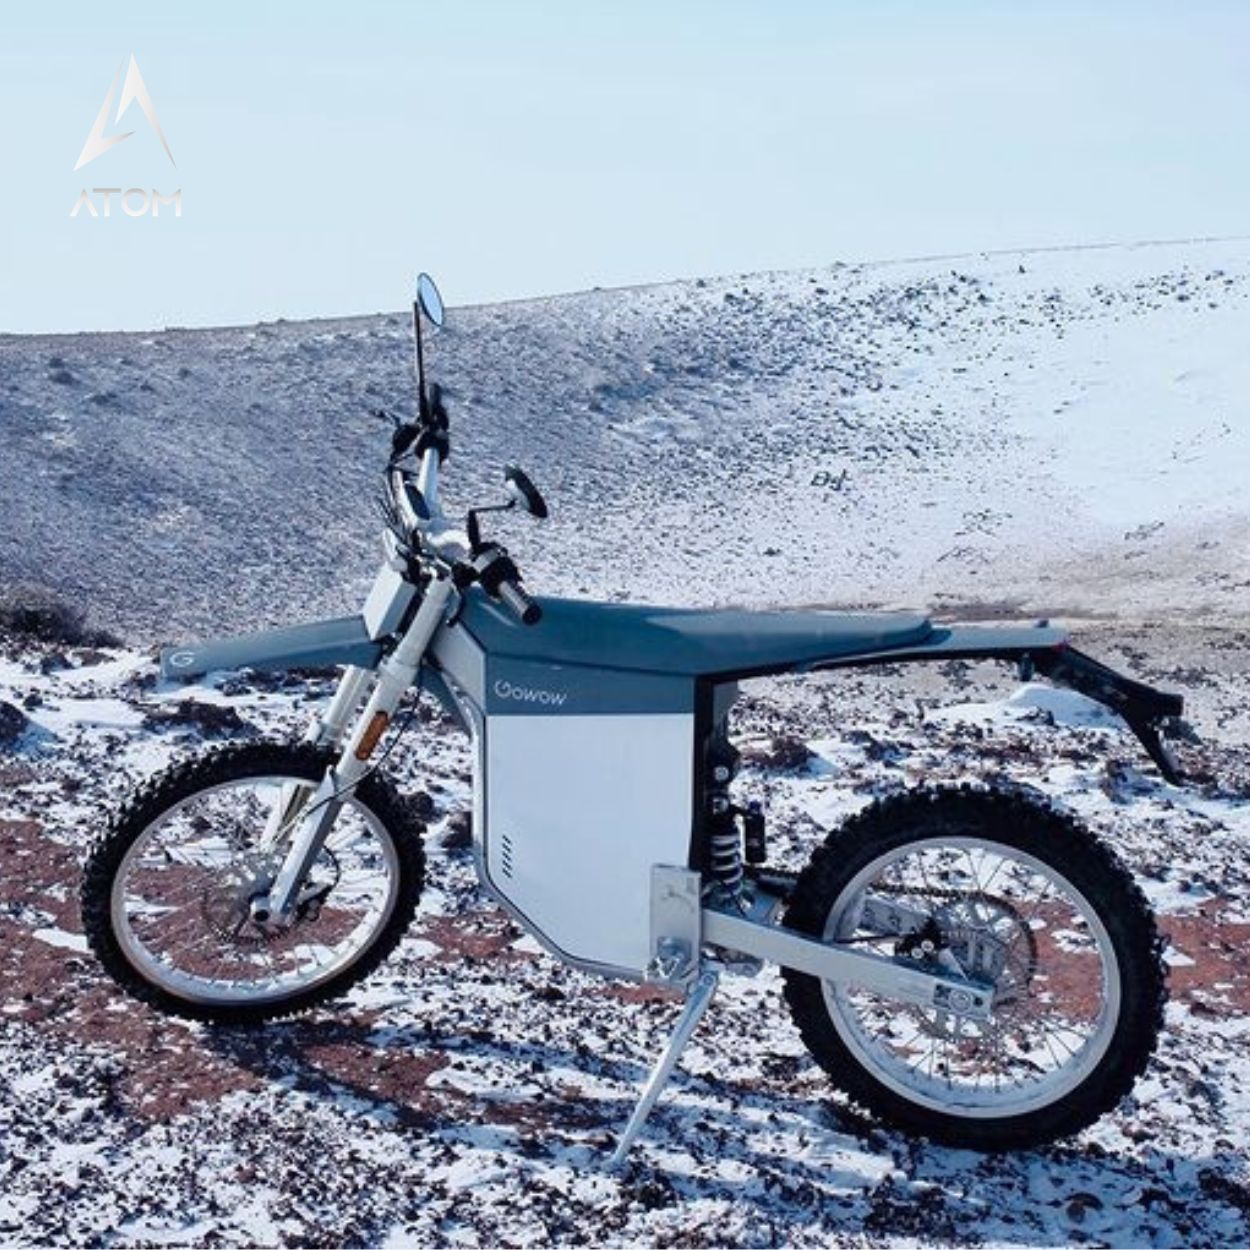 Moto électrique Dirtbike, Gowow Alpha | 8000 W | 50 cc | V-max 45 km/h | Autonomie 75 km - Atom Motors